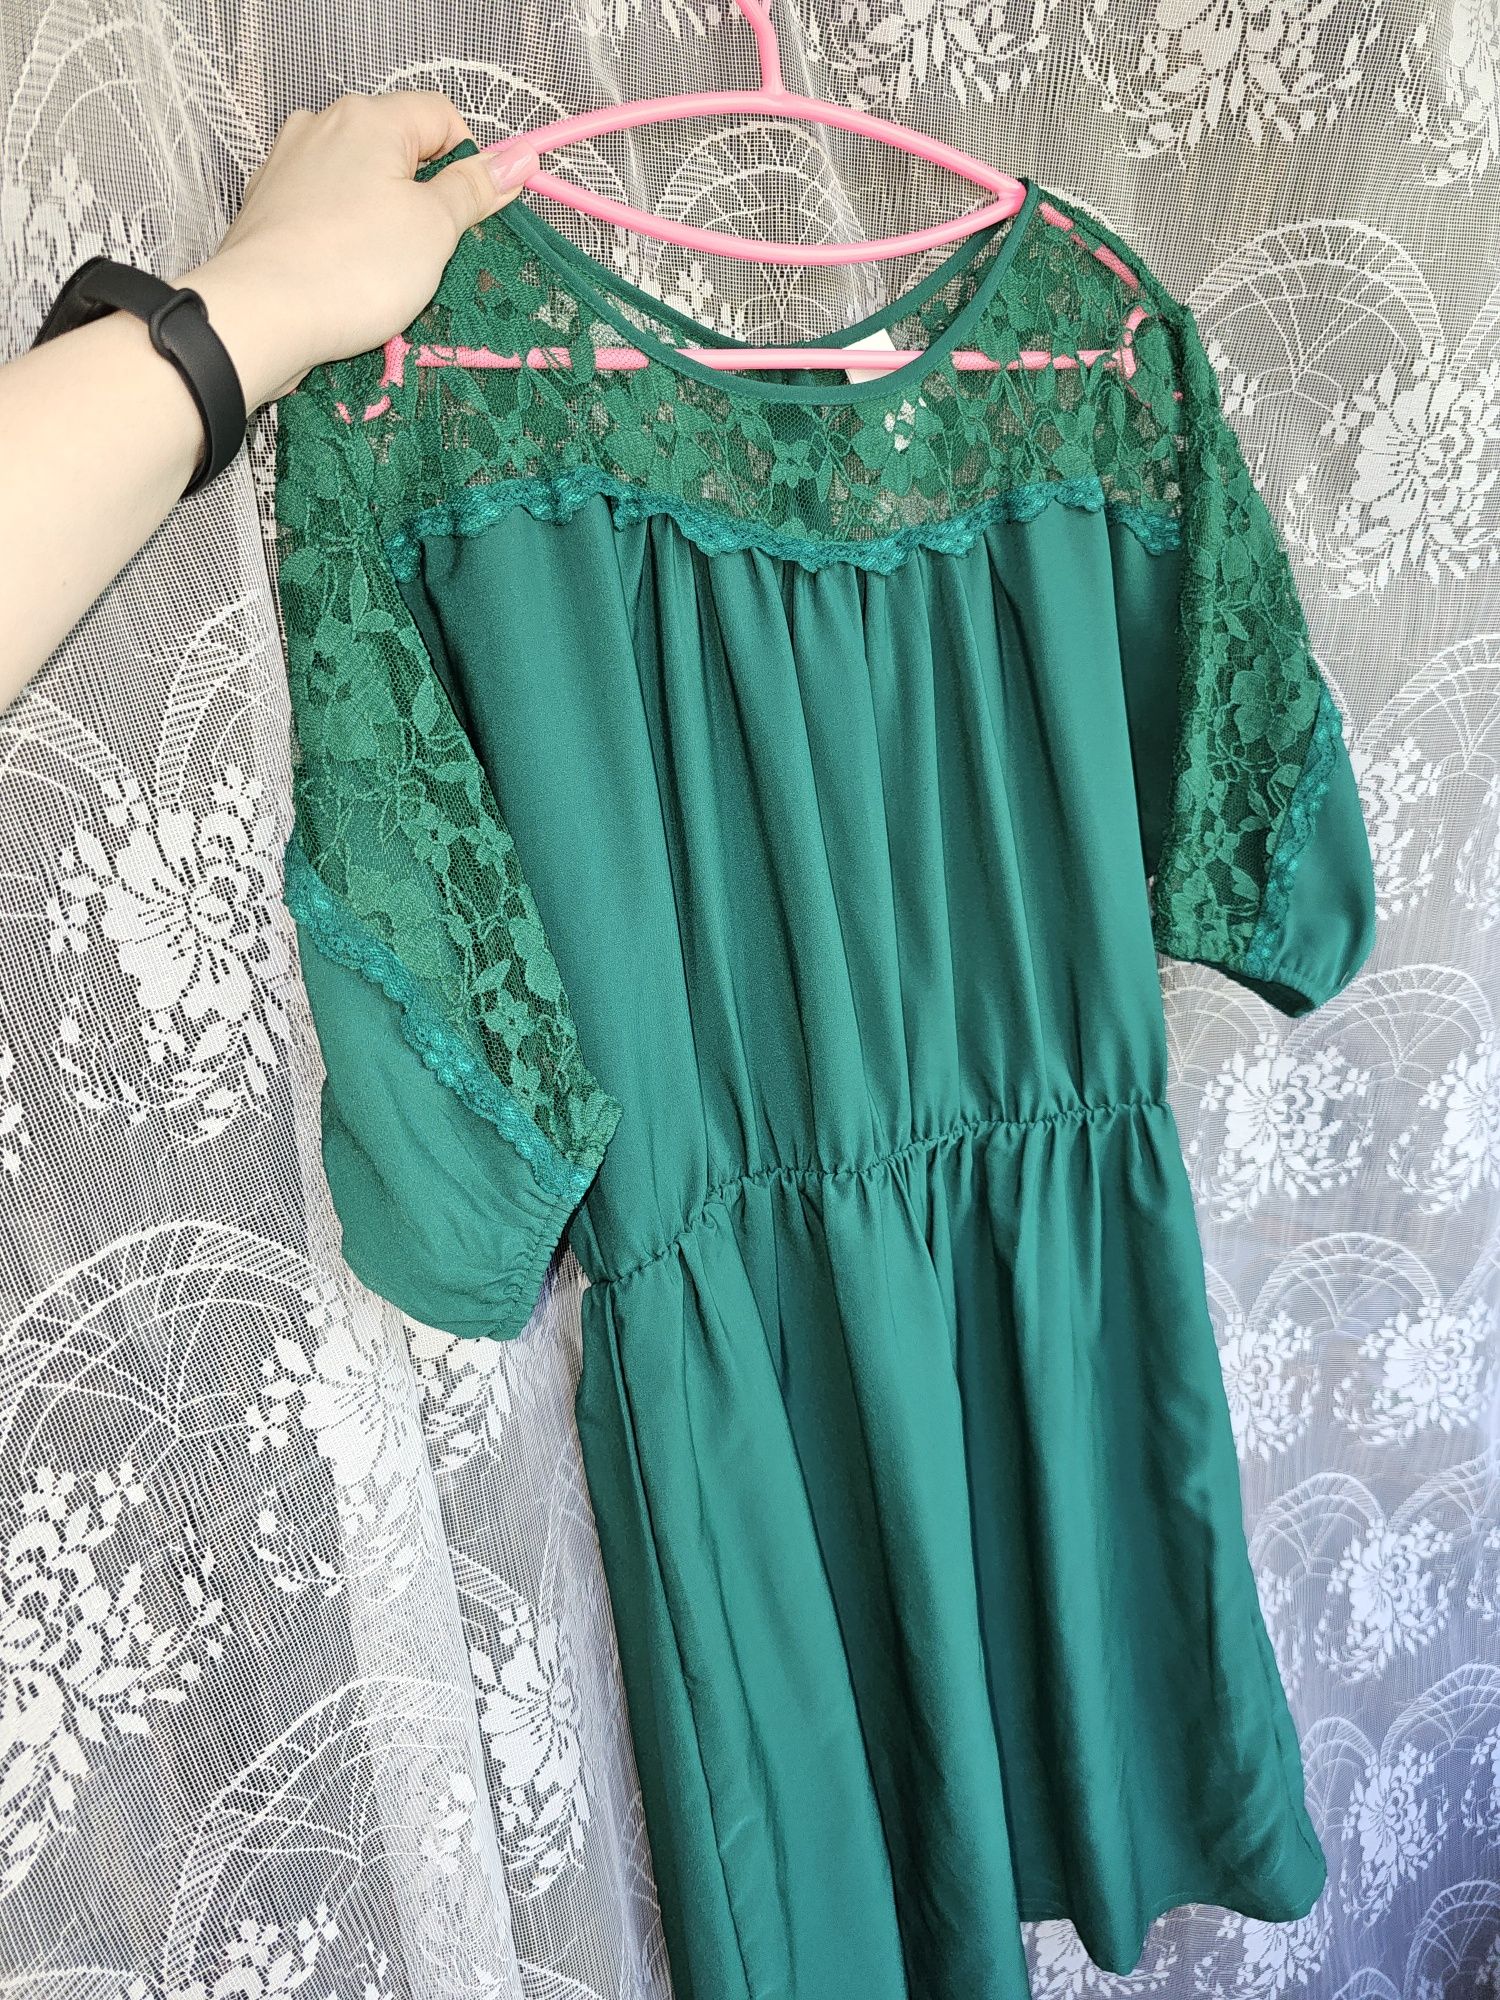 Сукня для літа | Платье летнее с кружевом